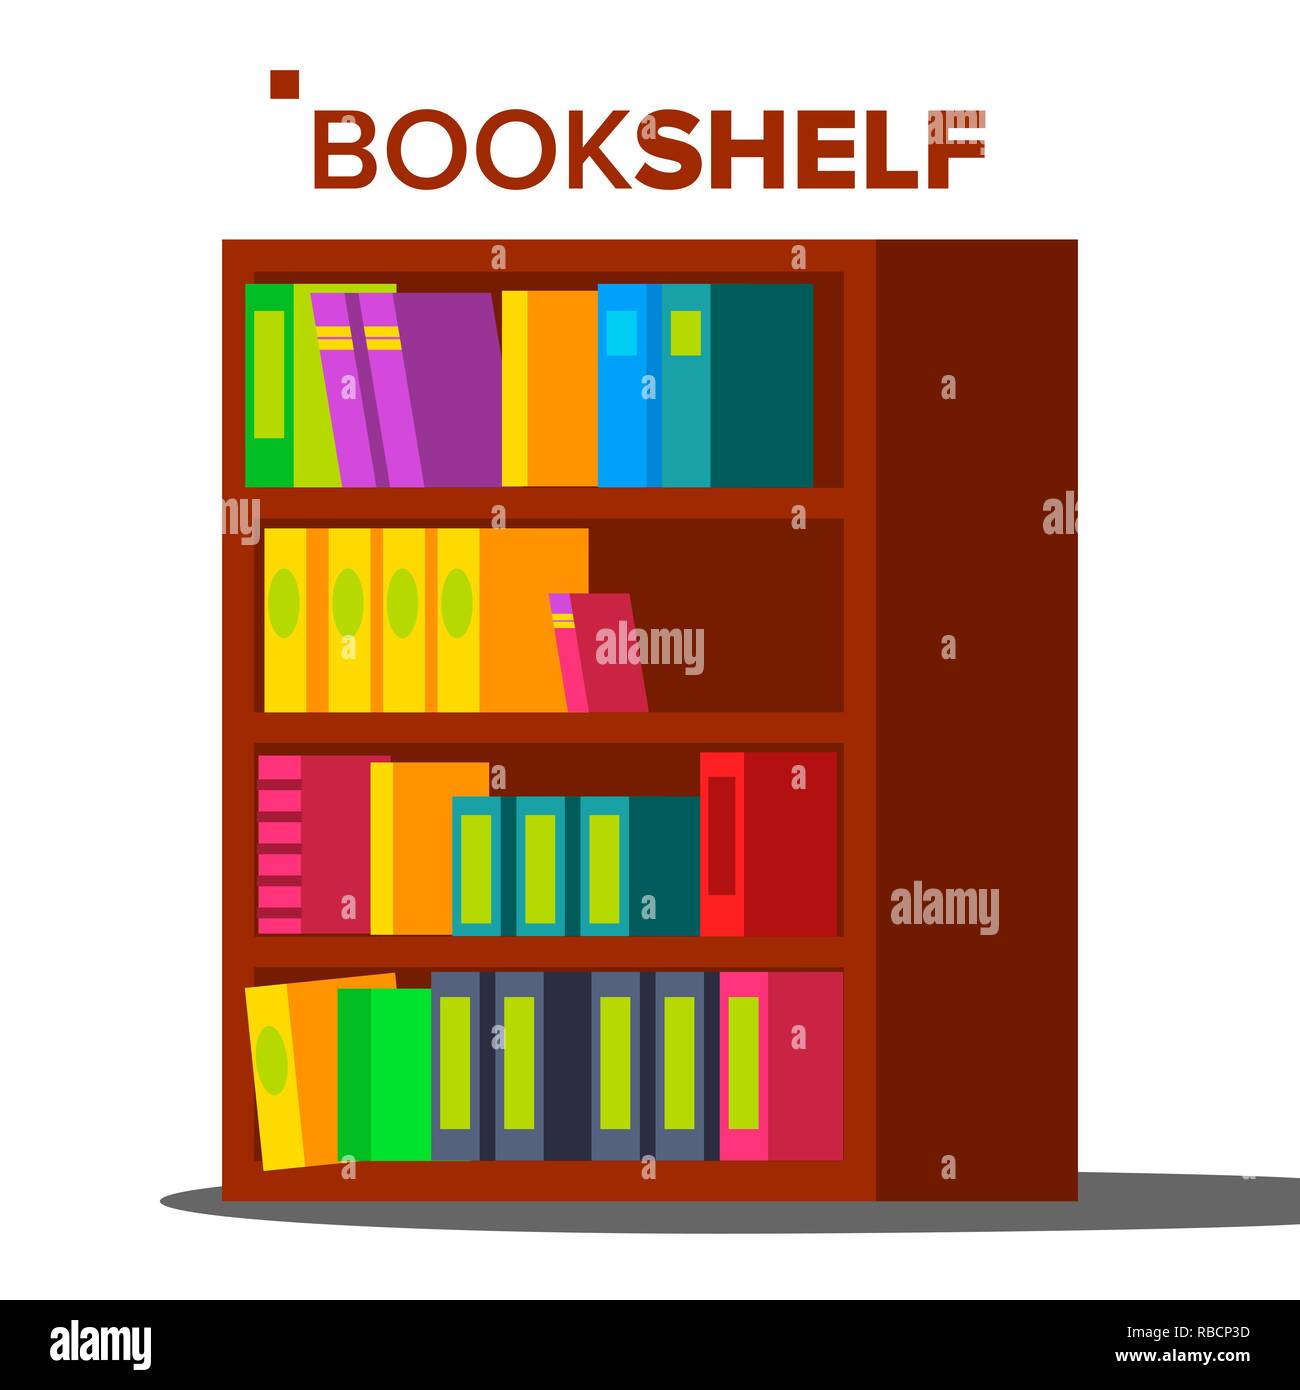 Bücherregal Vektor. Home Bibliothek oder Buchhandlung. Bücherregal voll von verschiedenen Farbe Bücher. Isolierte flache Cartoon Illustration Stock Vektor